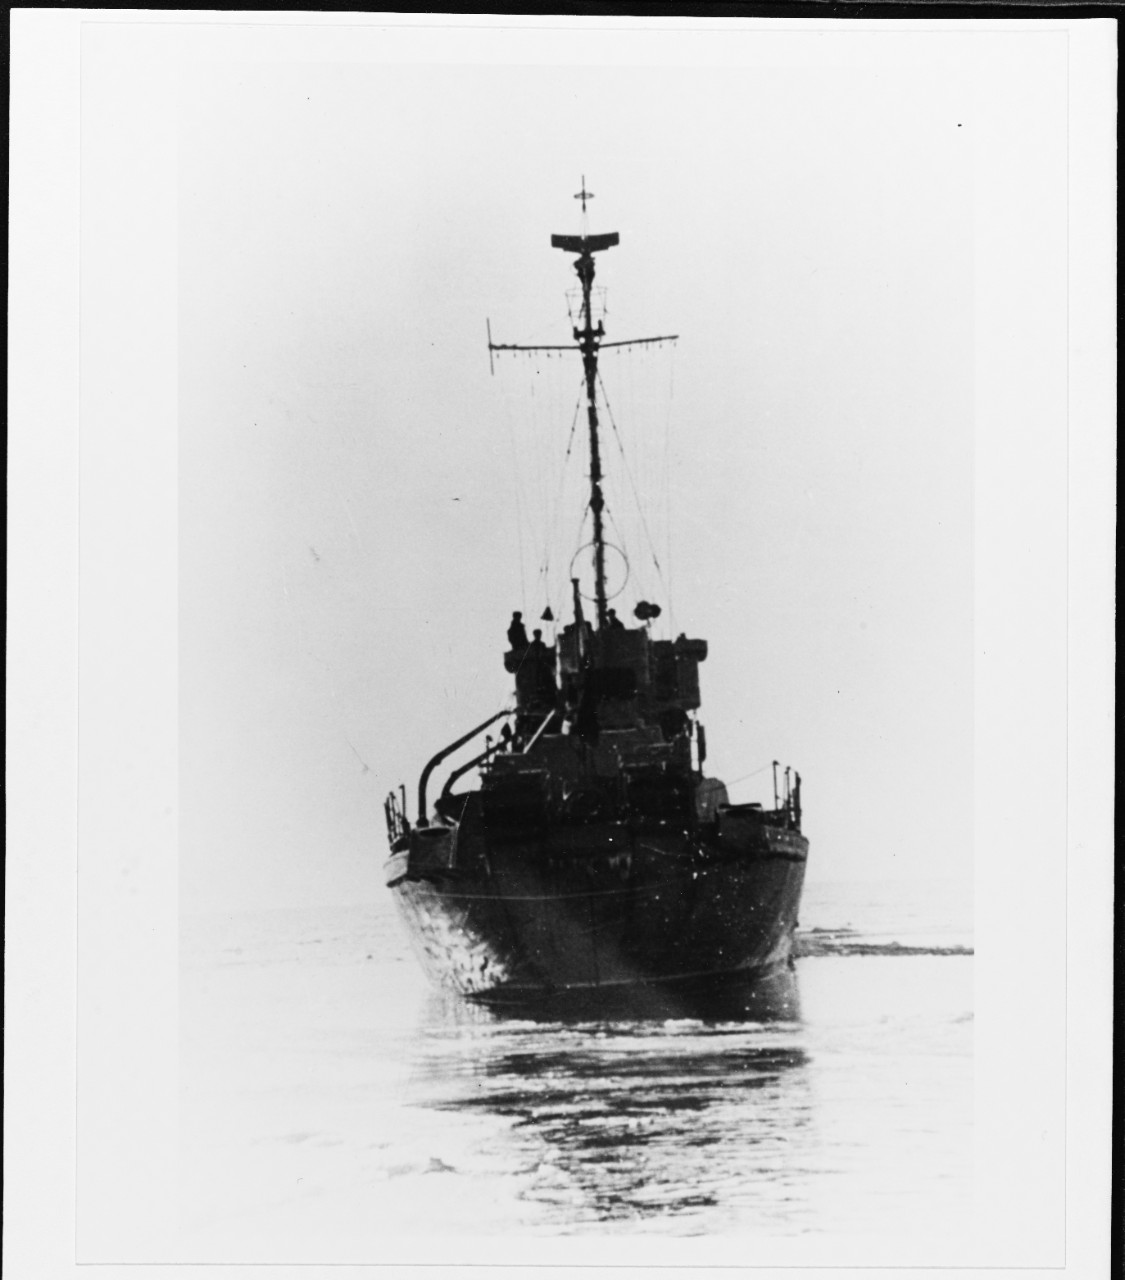 Soviet "KRONSTADT" class patrol vessel.